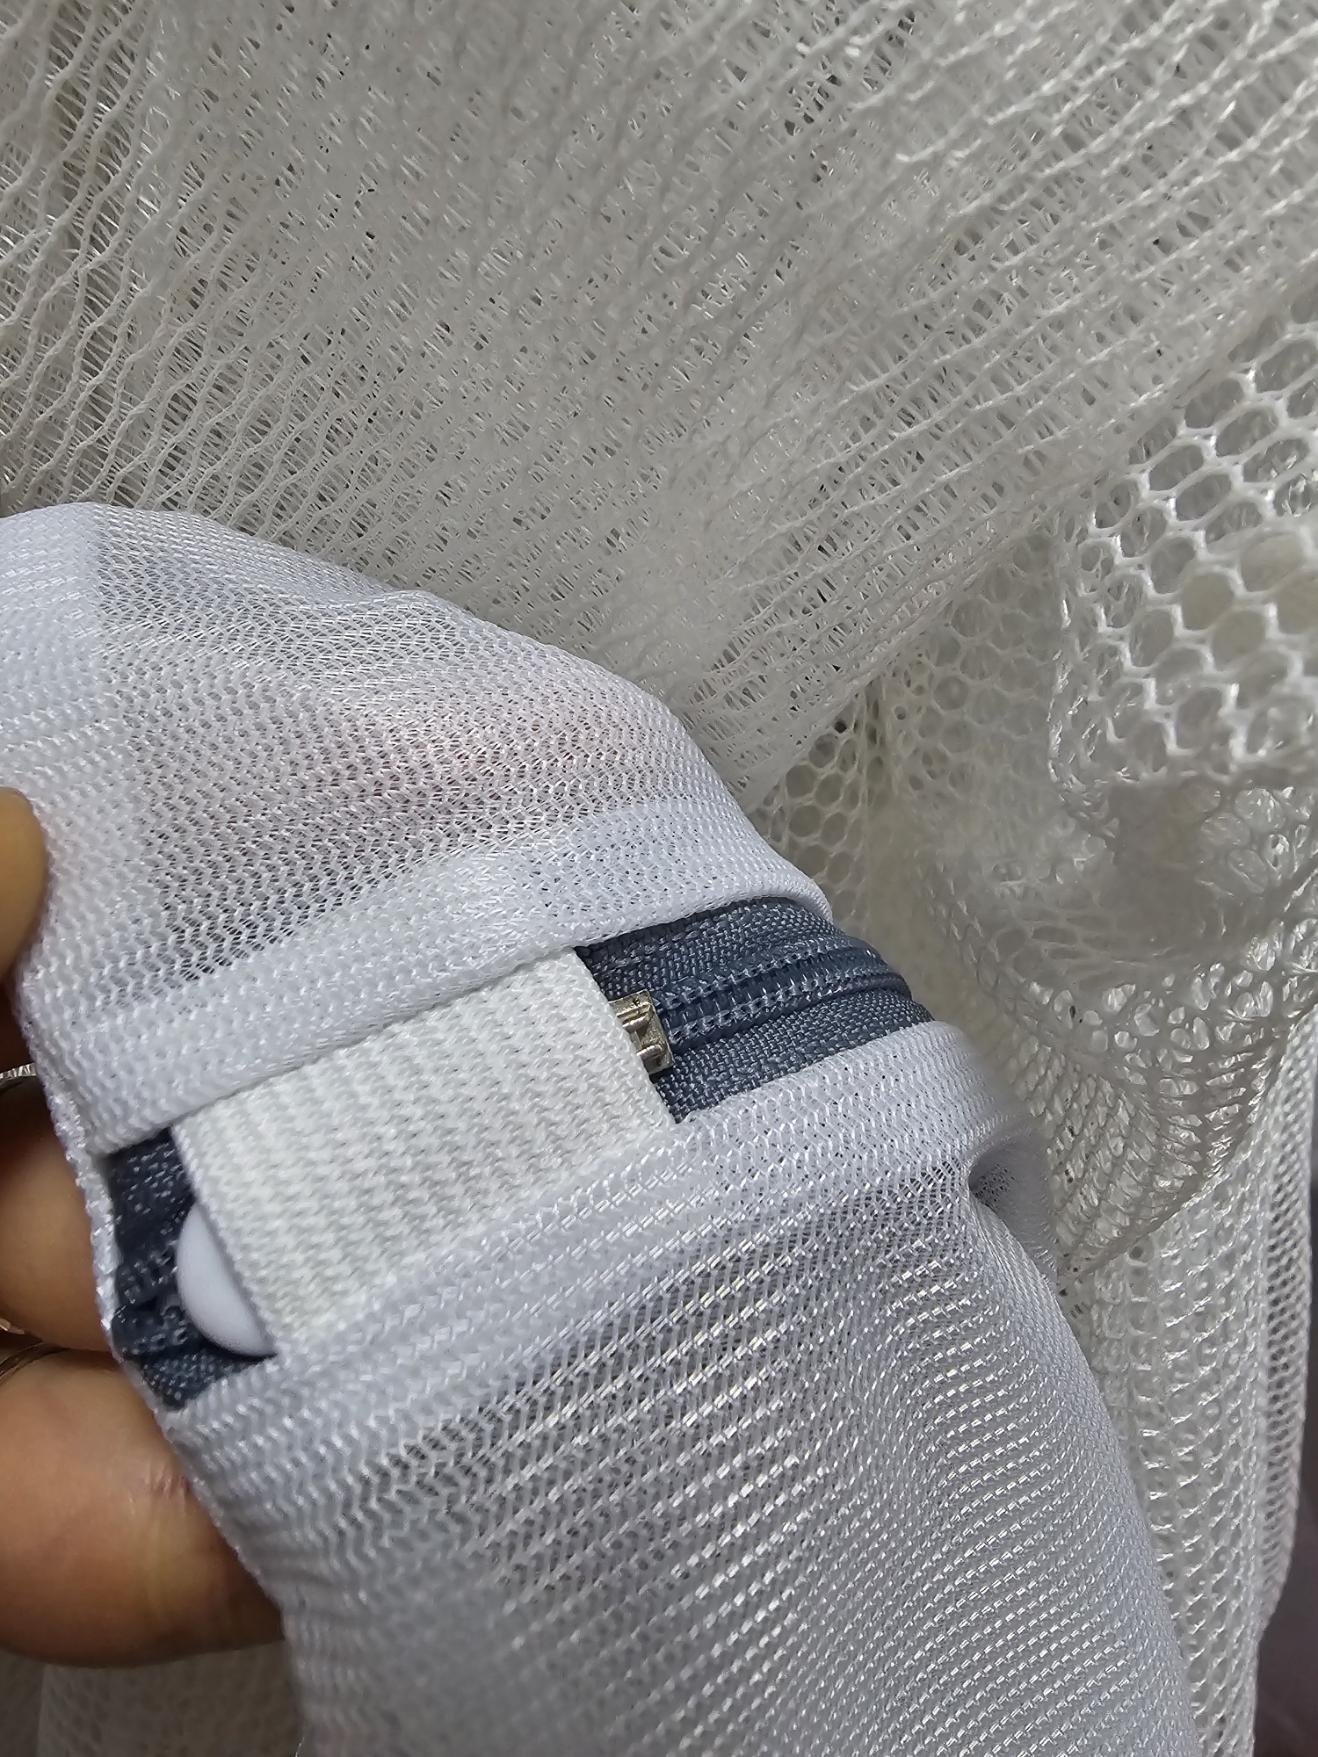 지퍼 덮개에 꼭 숨은 지퍼 지퍼에도 플라스틱 마감 처리가 되어 있다.